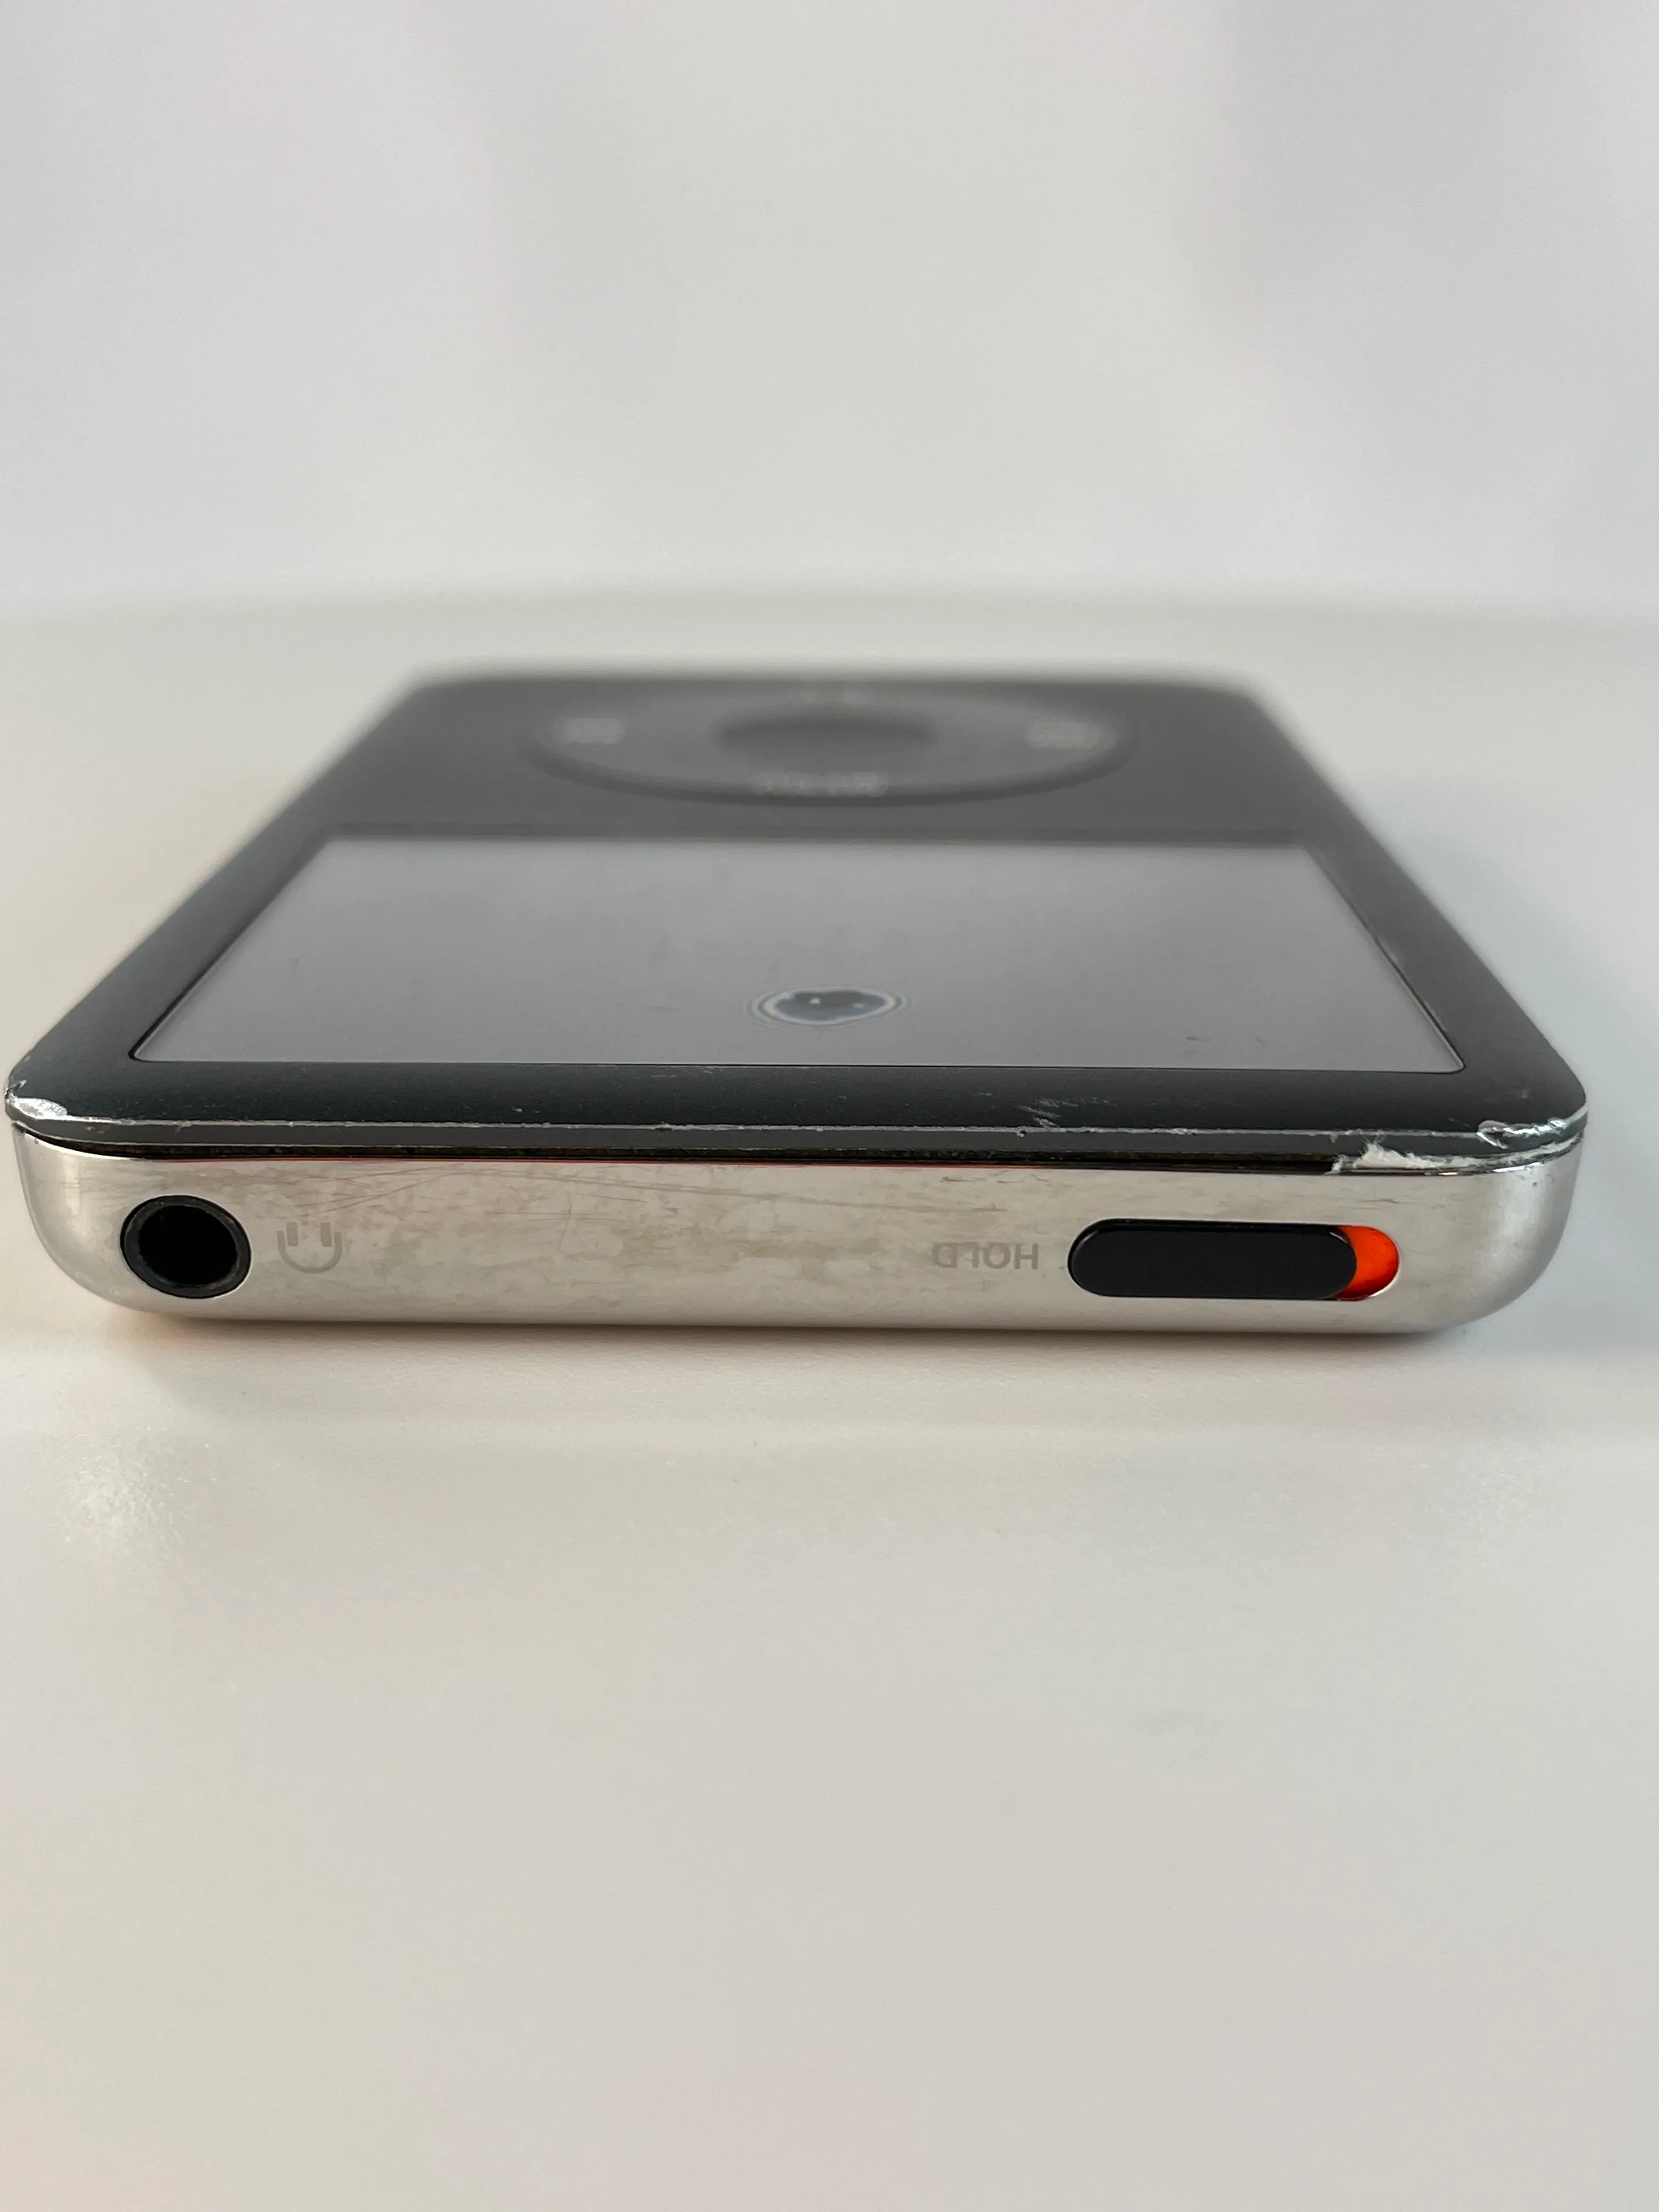 Apple iPod Classic 6th Generation A1238 (Black - 120 GB) media